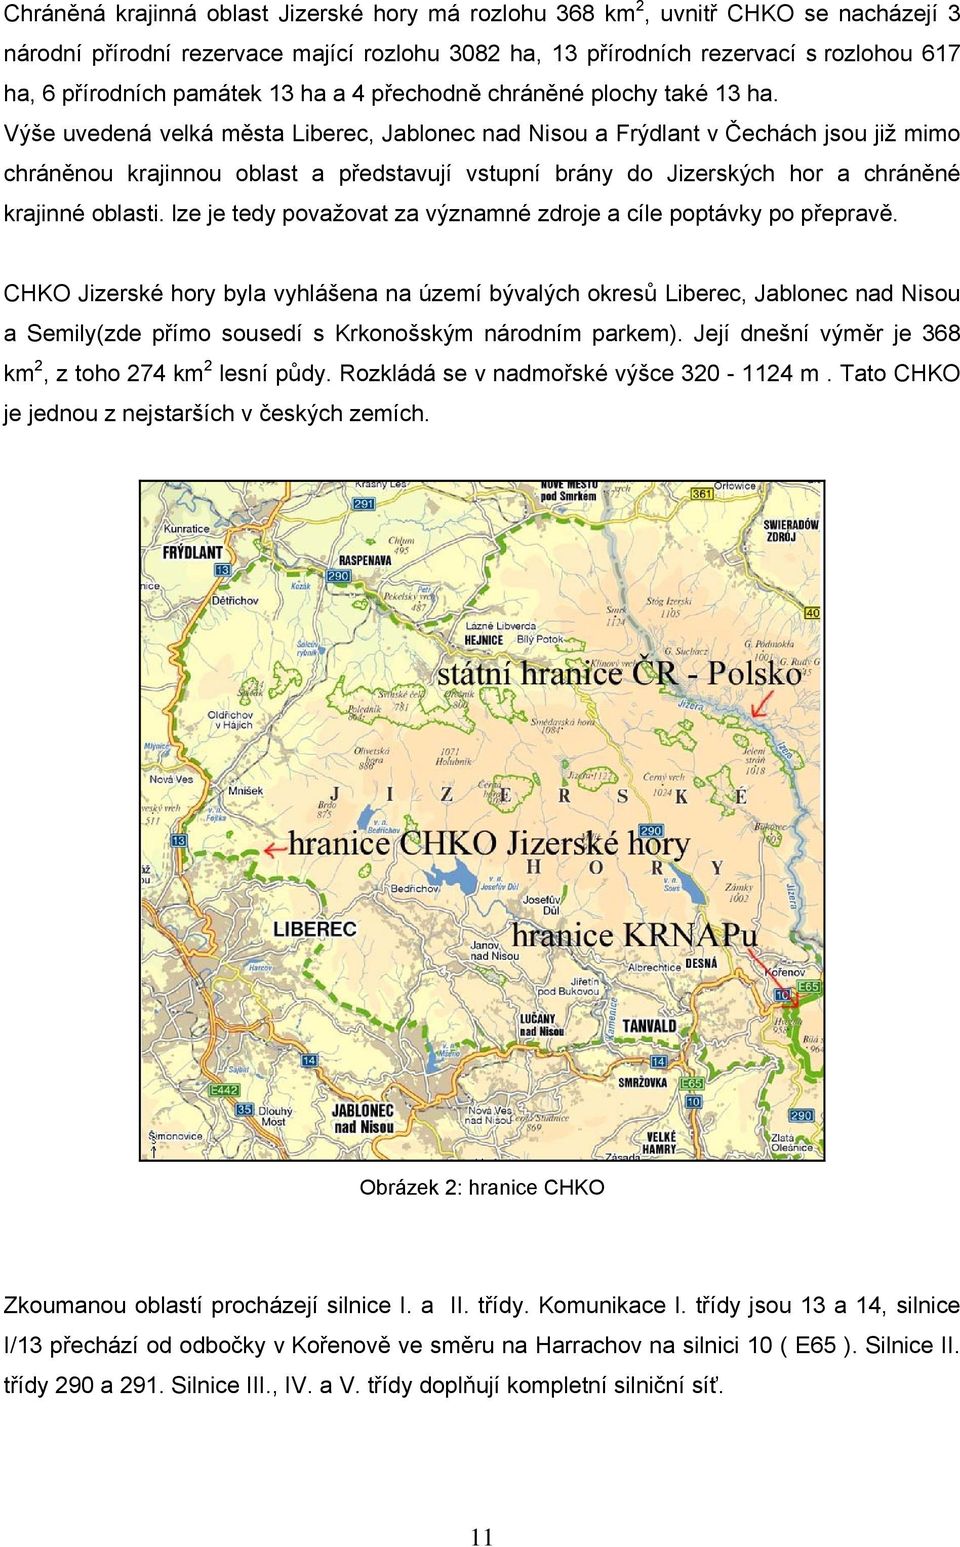 Výše uvedená velká města Liberec, Jablonec nad Nisou a Frýdlant v Čechách jsou již mimo chráněnou krajinnou oblast a představují vstupní brány do Jizerských hor a chráněné krajinné oblasti.